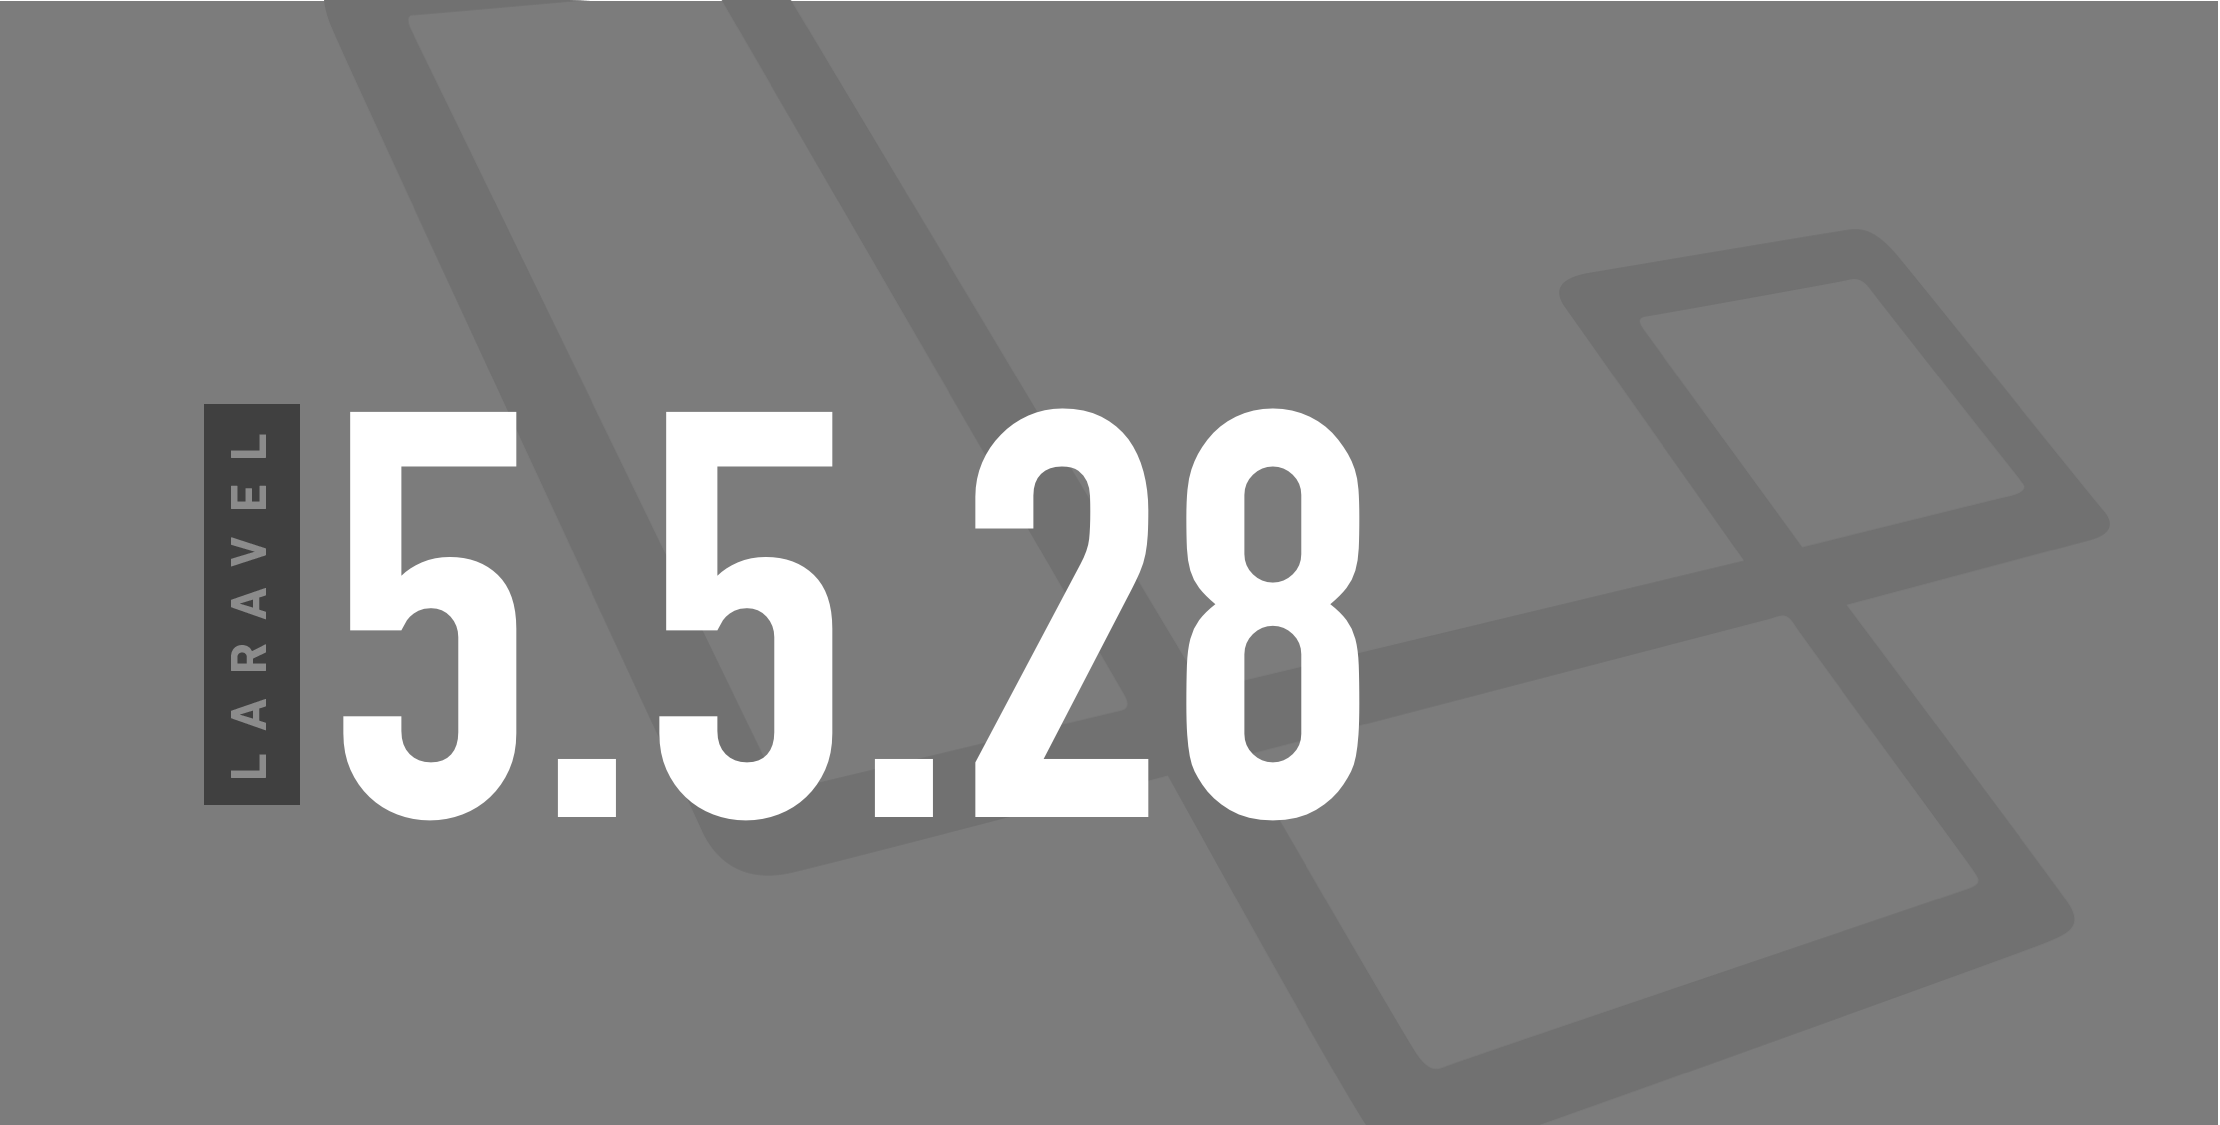 Laravel v5.5.28 Released image